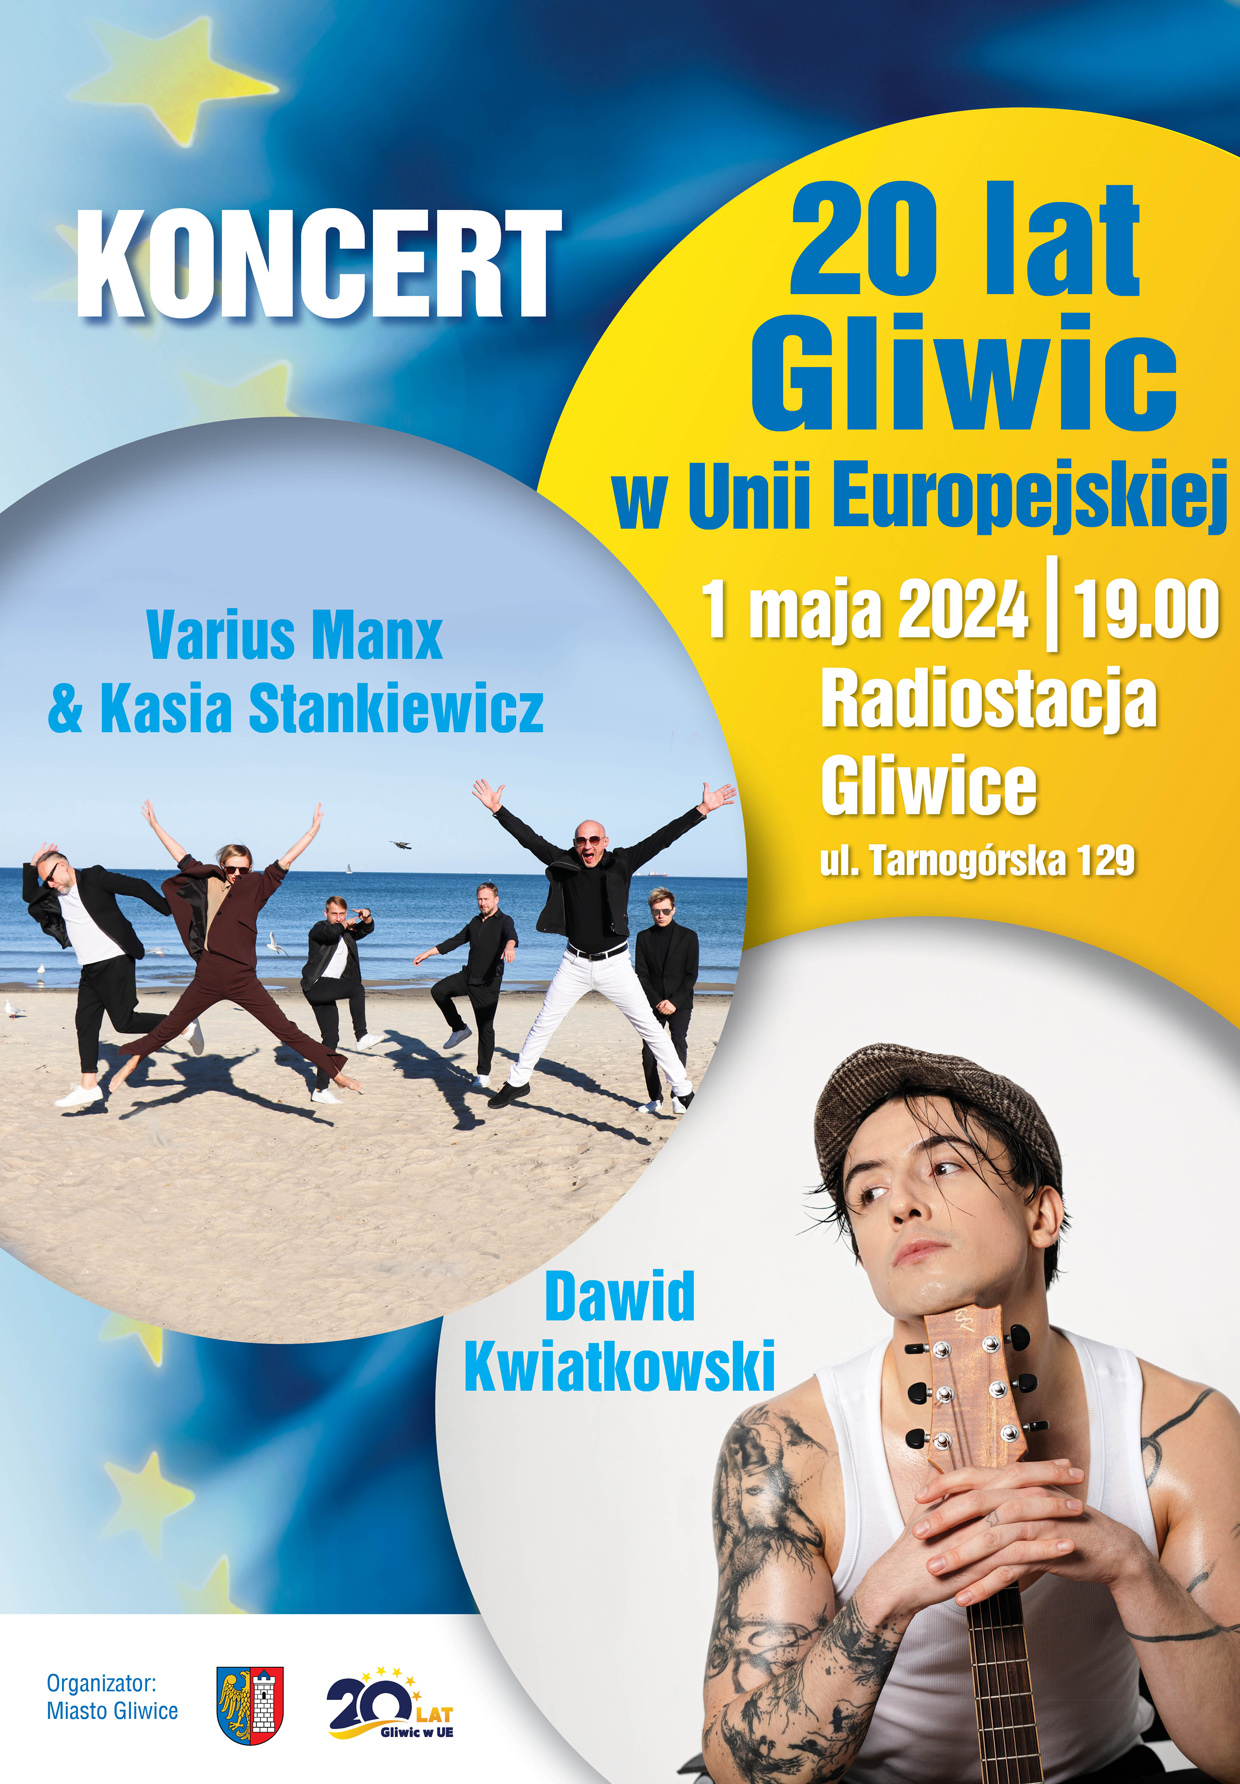 Plakat koncertu 20 lat Gliwic w UE. 1 maja 2024, Radiostacja Gliwice. Wystąpią Varius Manx i Kasia Stankiewicz oraz Dawid Kwiatkowski